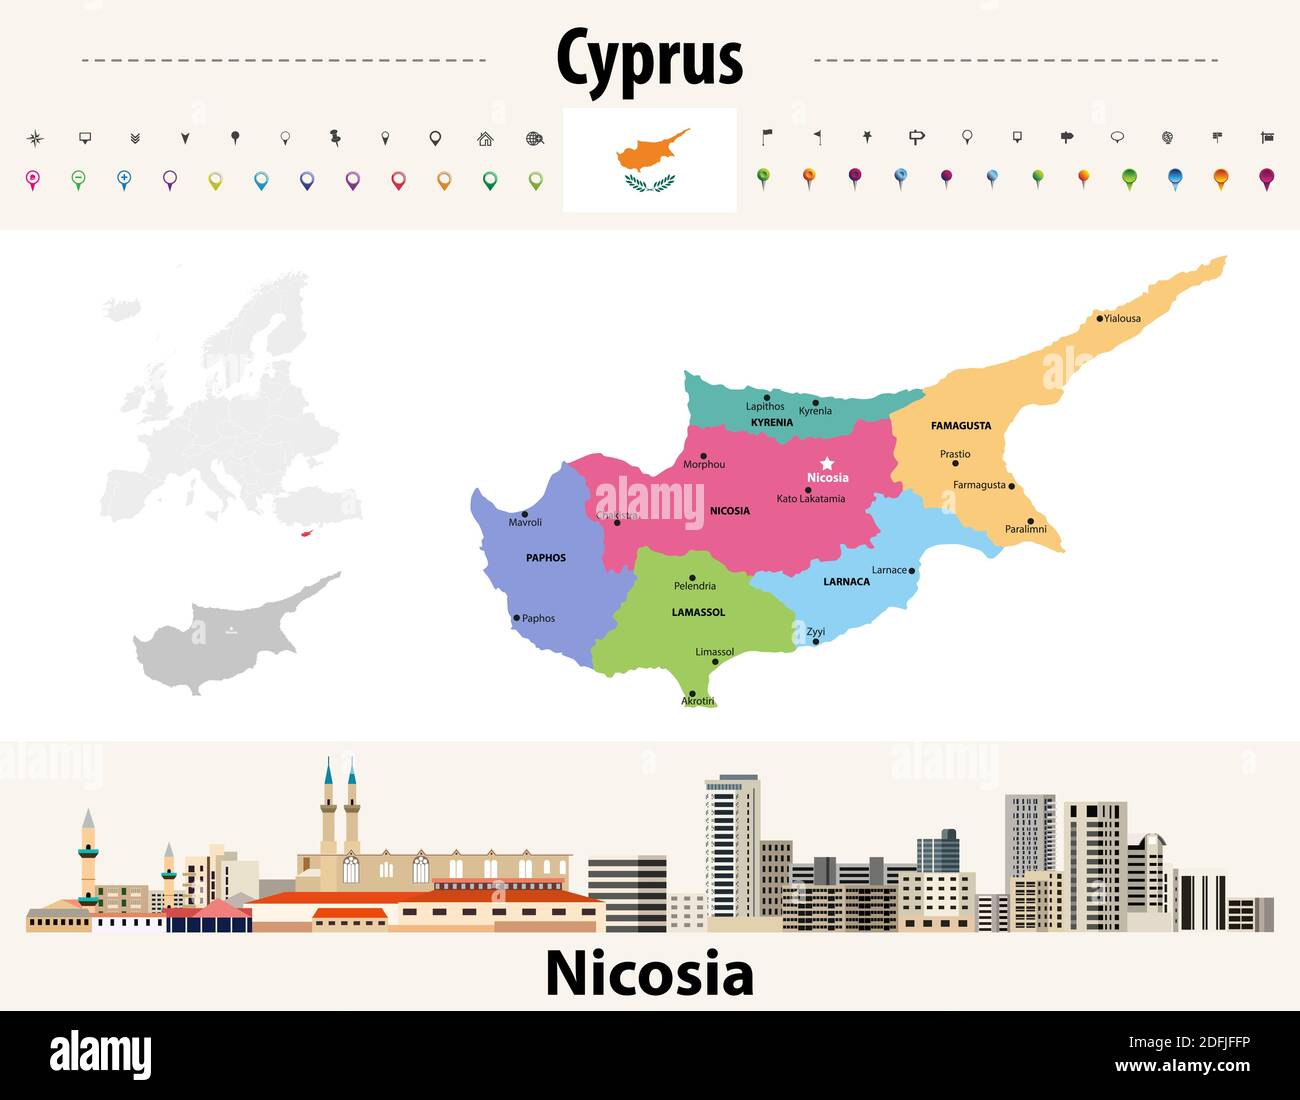 Zypern Verwaltungsdivisionen Karte mit den wichtigsten Städten. Flagge Zyperns. Nicosia Stadtbild. Vektorgrafik Stock Vektor